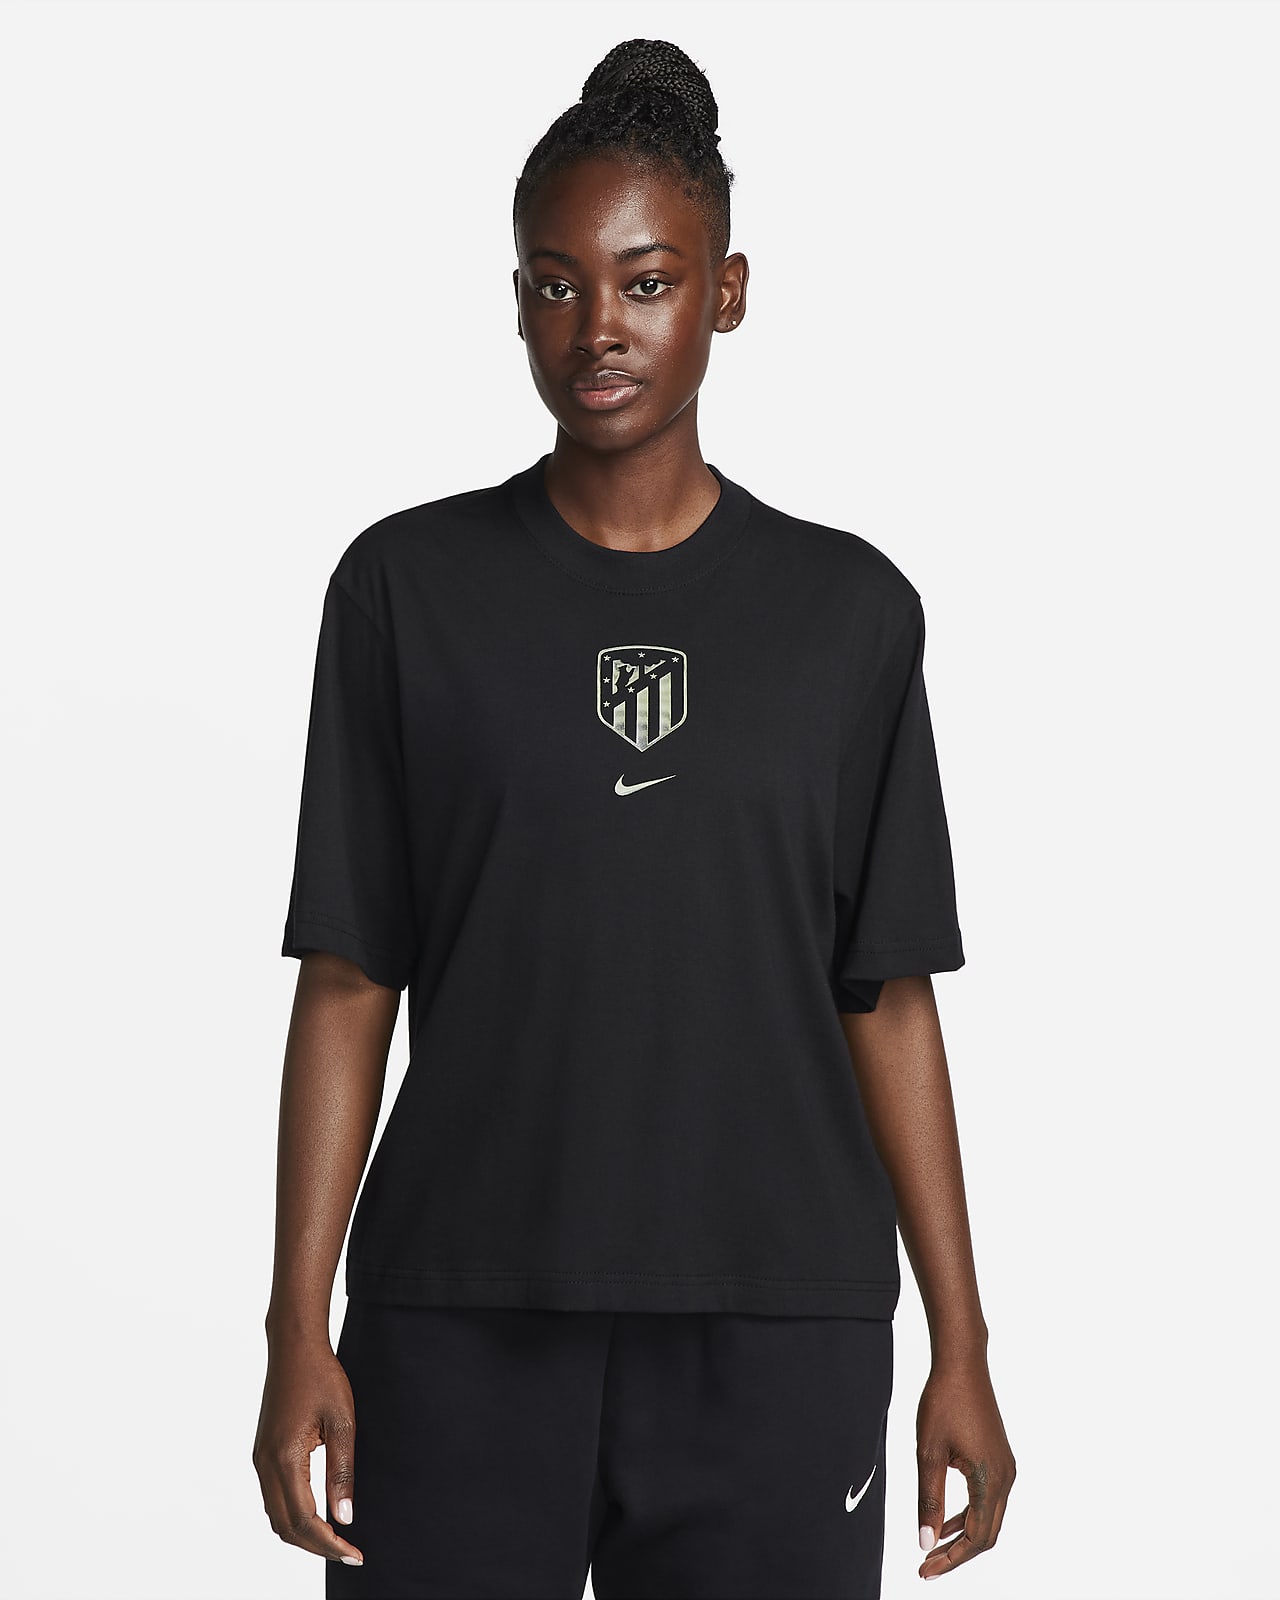 Γυναικείο ποδοσφαιρικό T-Shirt σε τετράγωνη γραμμή Nike Ατλέτικο Μαδρίτης